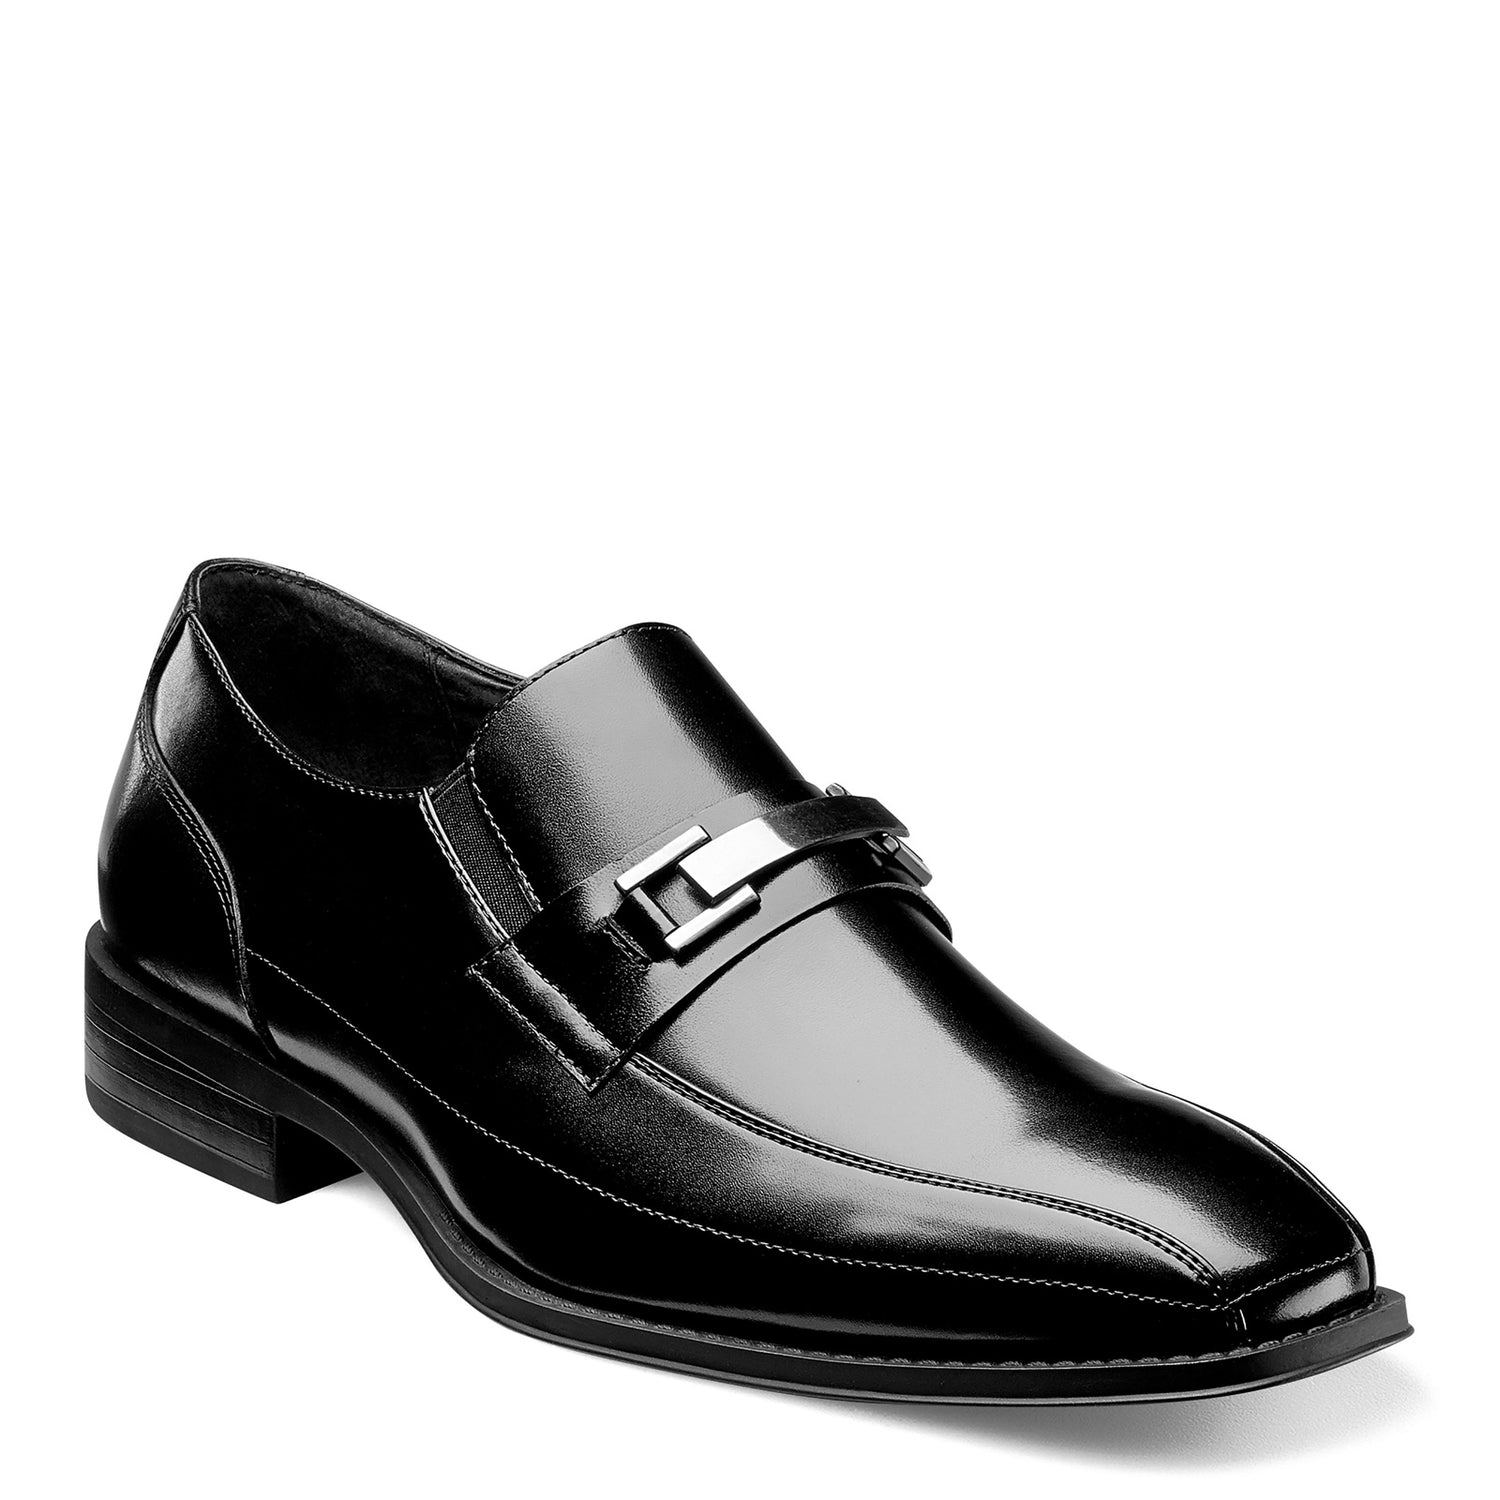 Peltz Shoes  Men's Stacy Adams Wakefield Loafer BLACK 20141-001